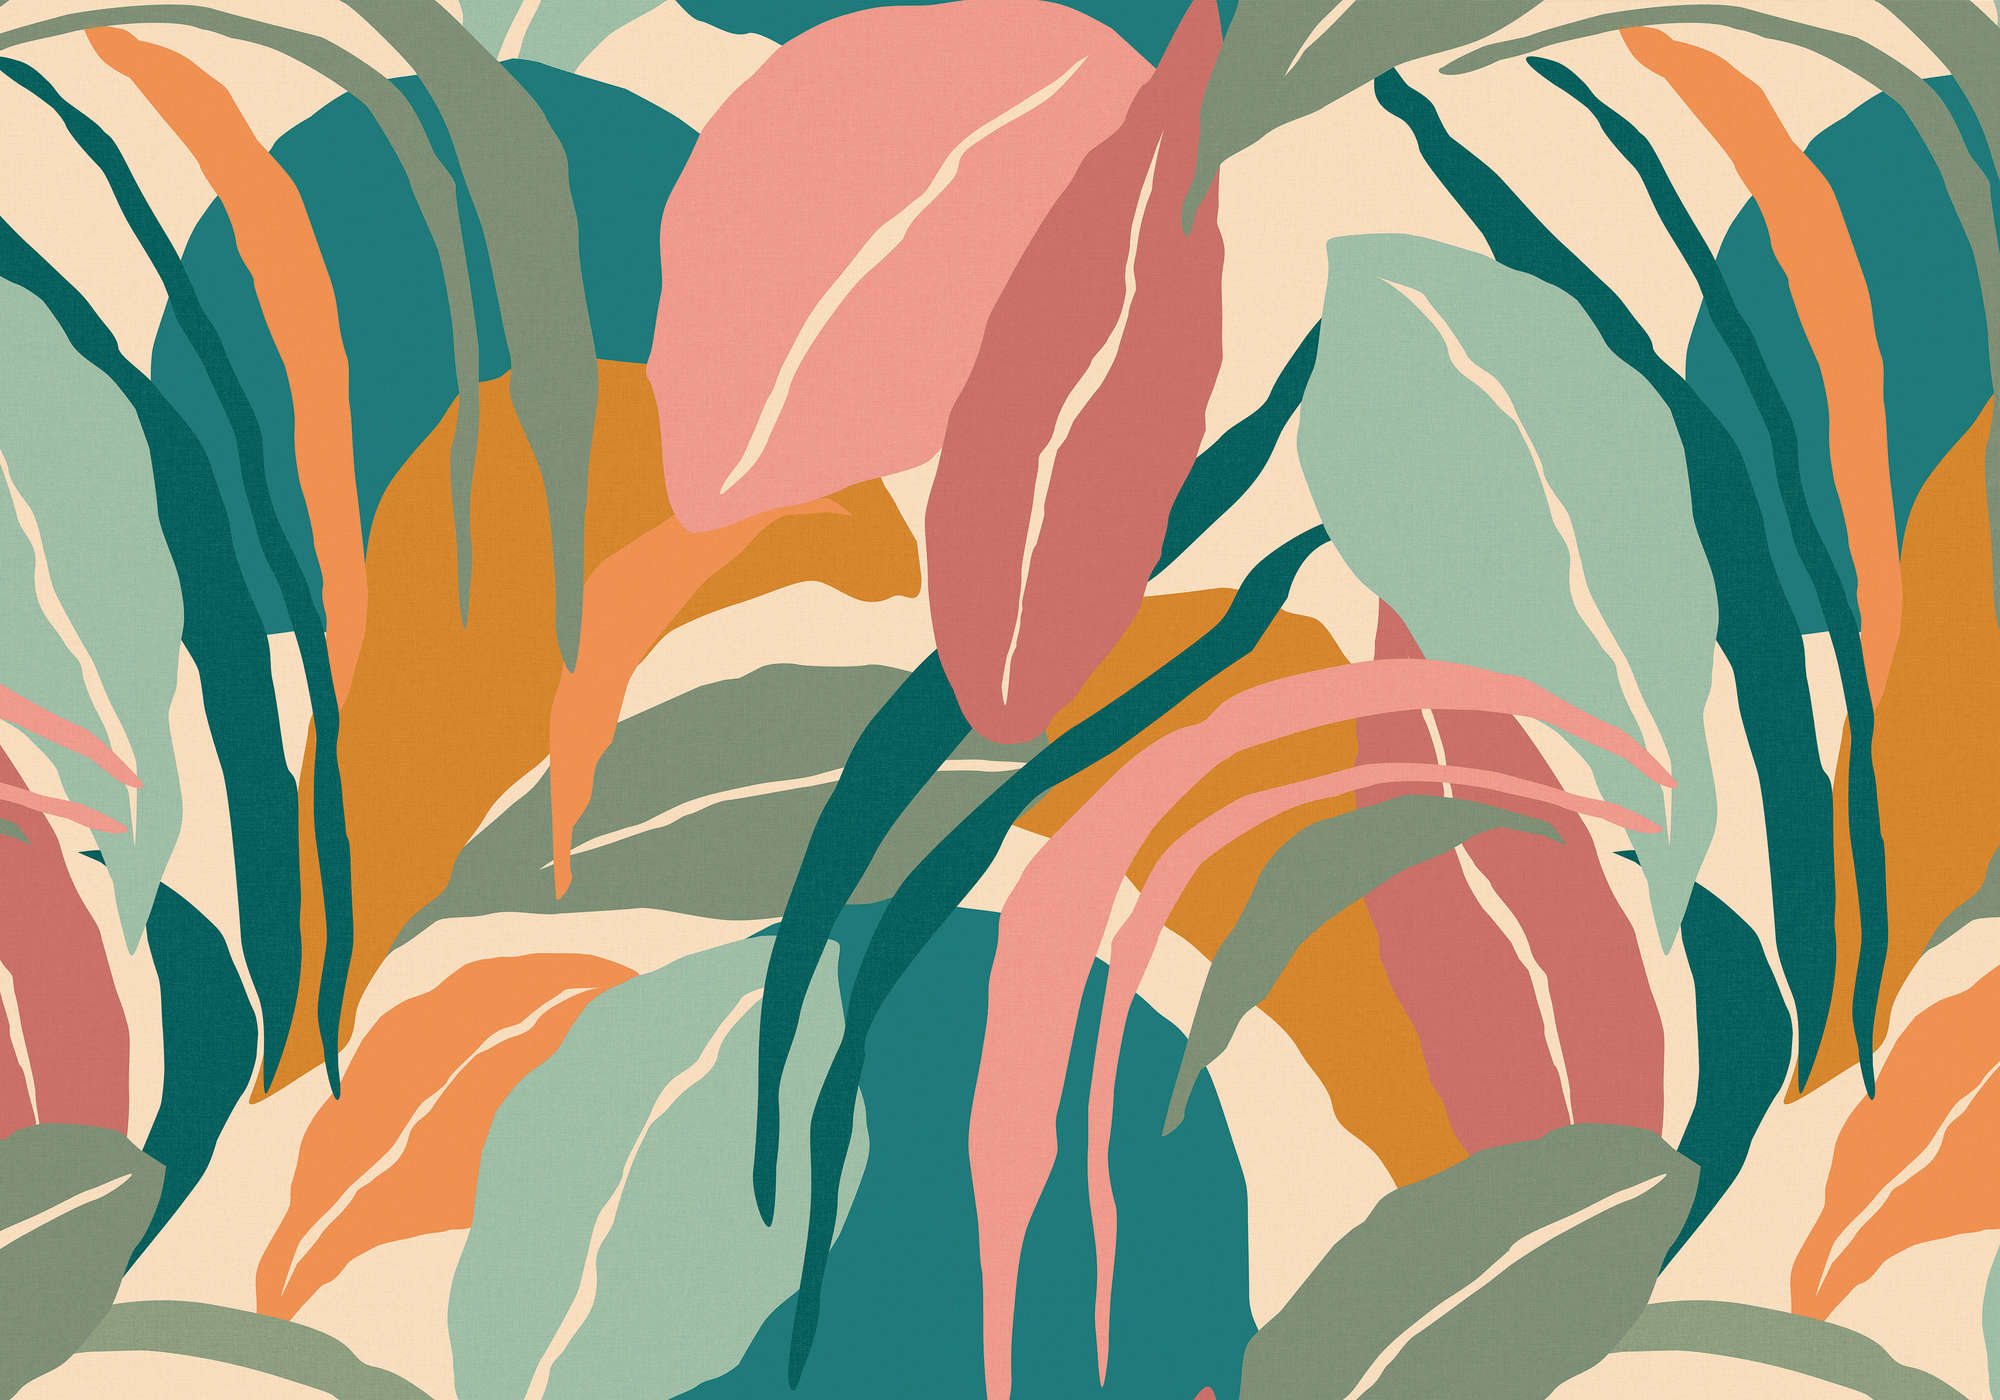             Fotomural abstracto con motivo de hojas - azul, multicolor - tejido no tejido nacarado liso
        